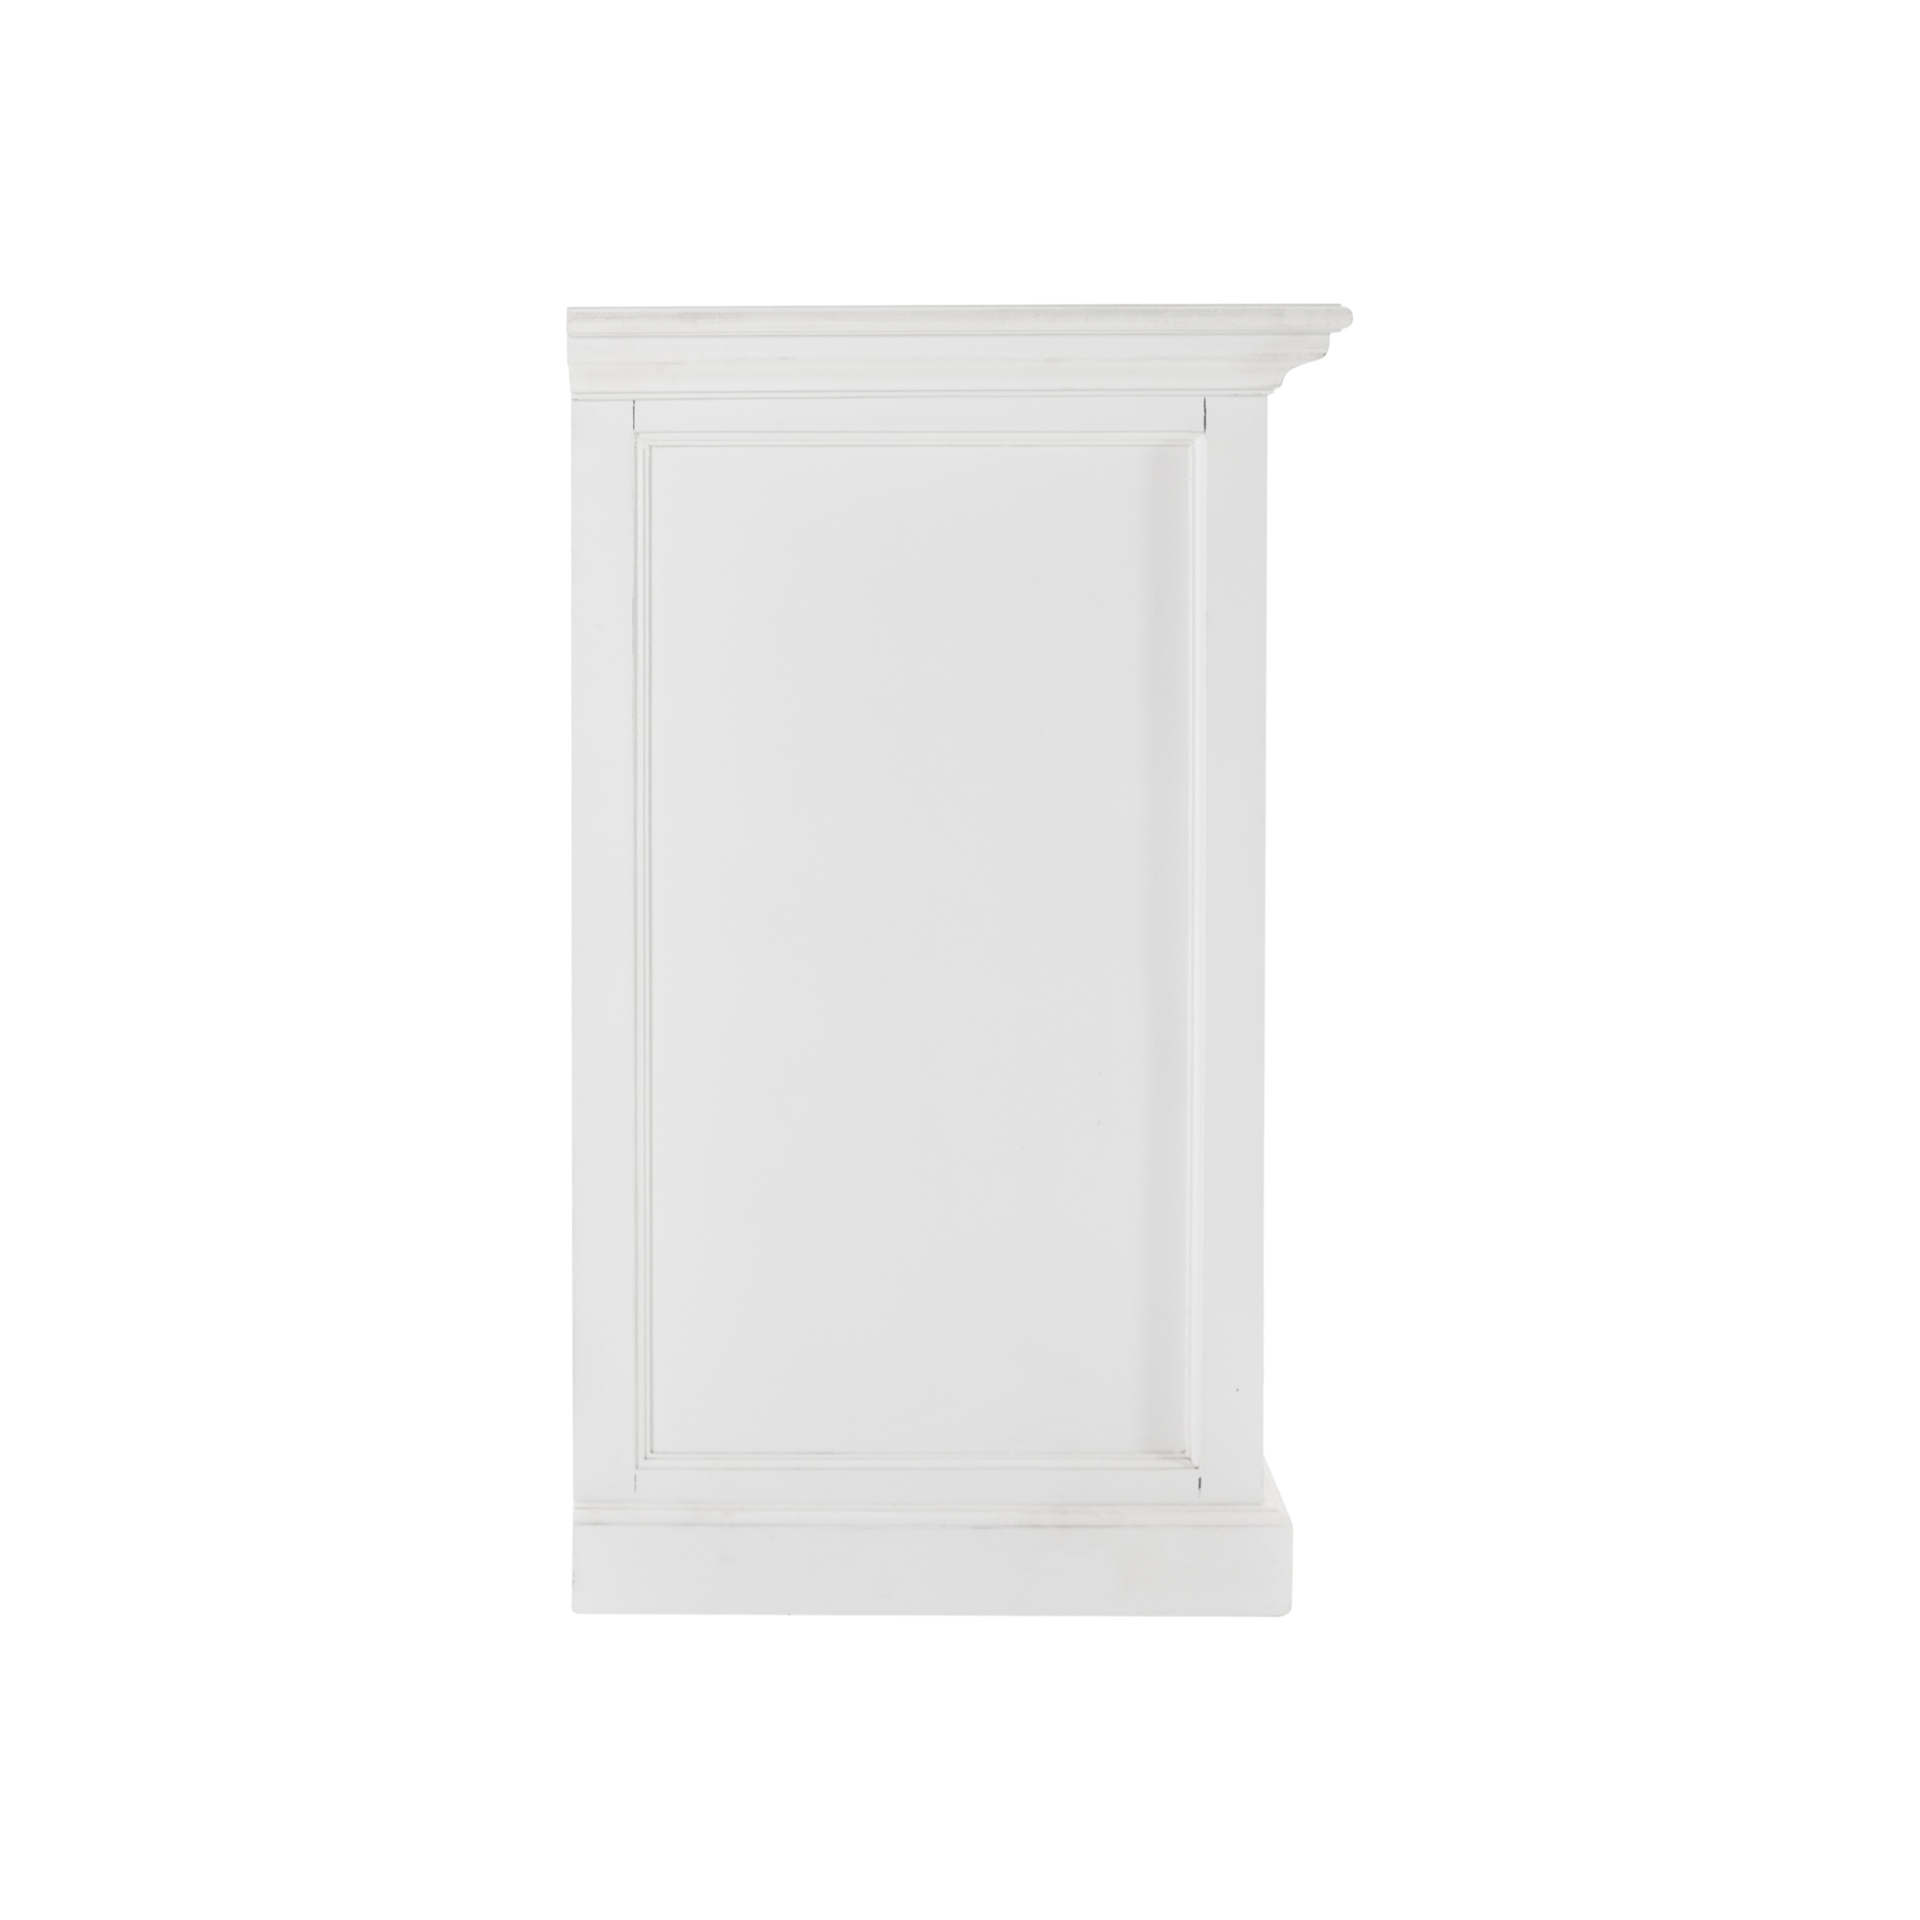 Das Sideboard Halifax überzeugt mit seinem Landhaus Stil. Gefertigt wurde es aus Mahagoni Holz, welches einen weißen Farbton besitzt. Das Sideboard verfügt über drei Schubladen und vier Türen, zwei von diesen sind aus Glas. Die Breite beträgt 145 cm.